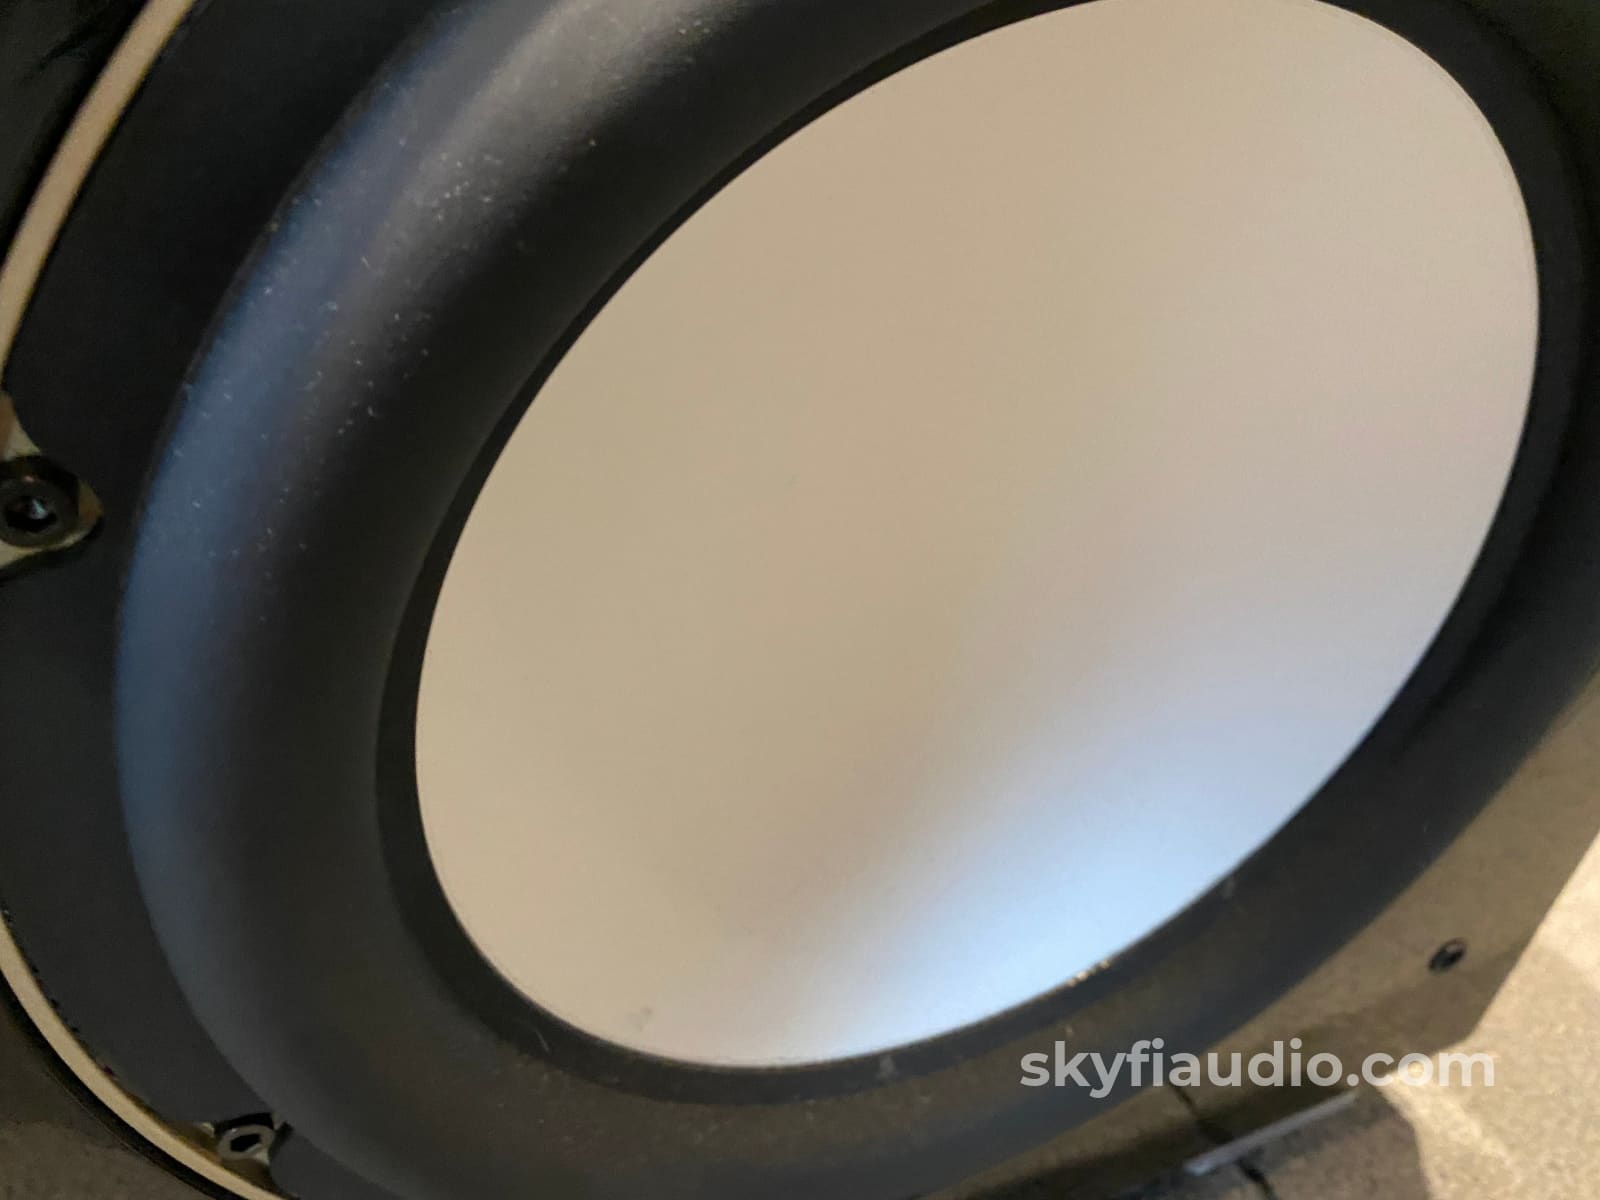 Rel Acoustics S/5 Sho (Super High Output) Subwoofer Speakers